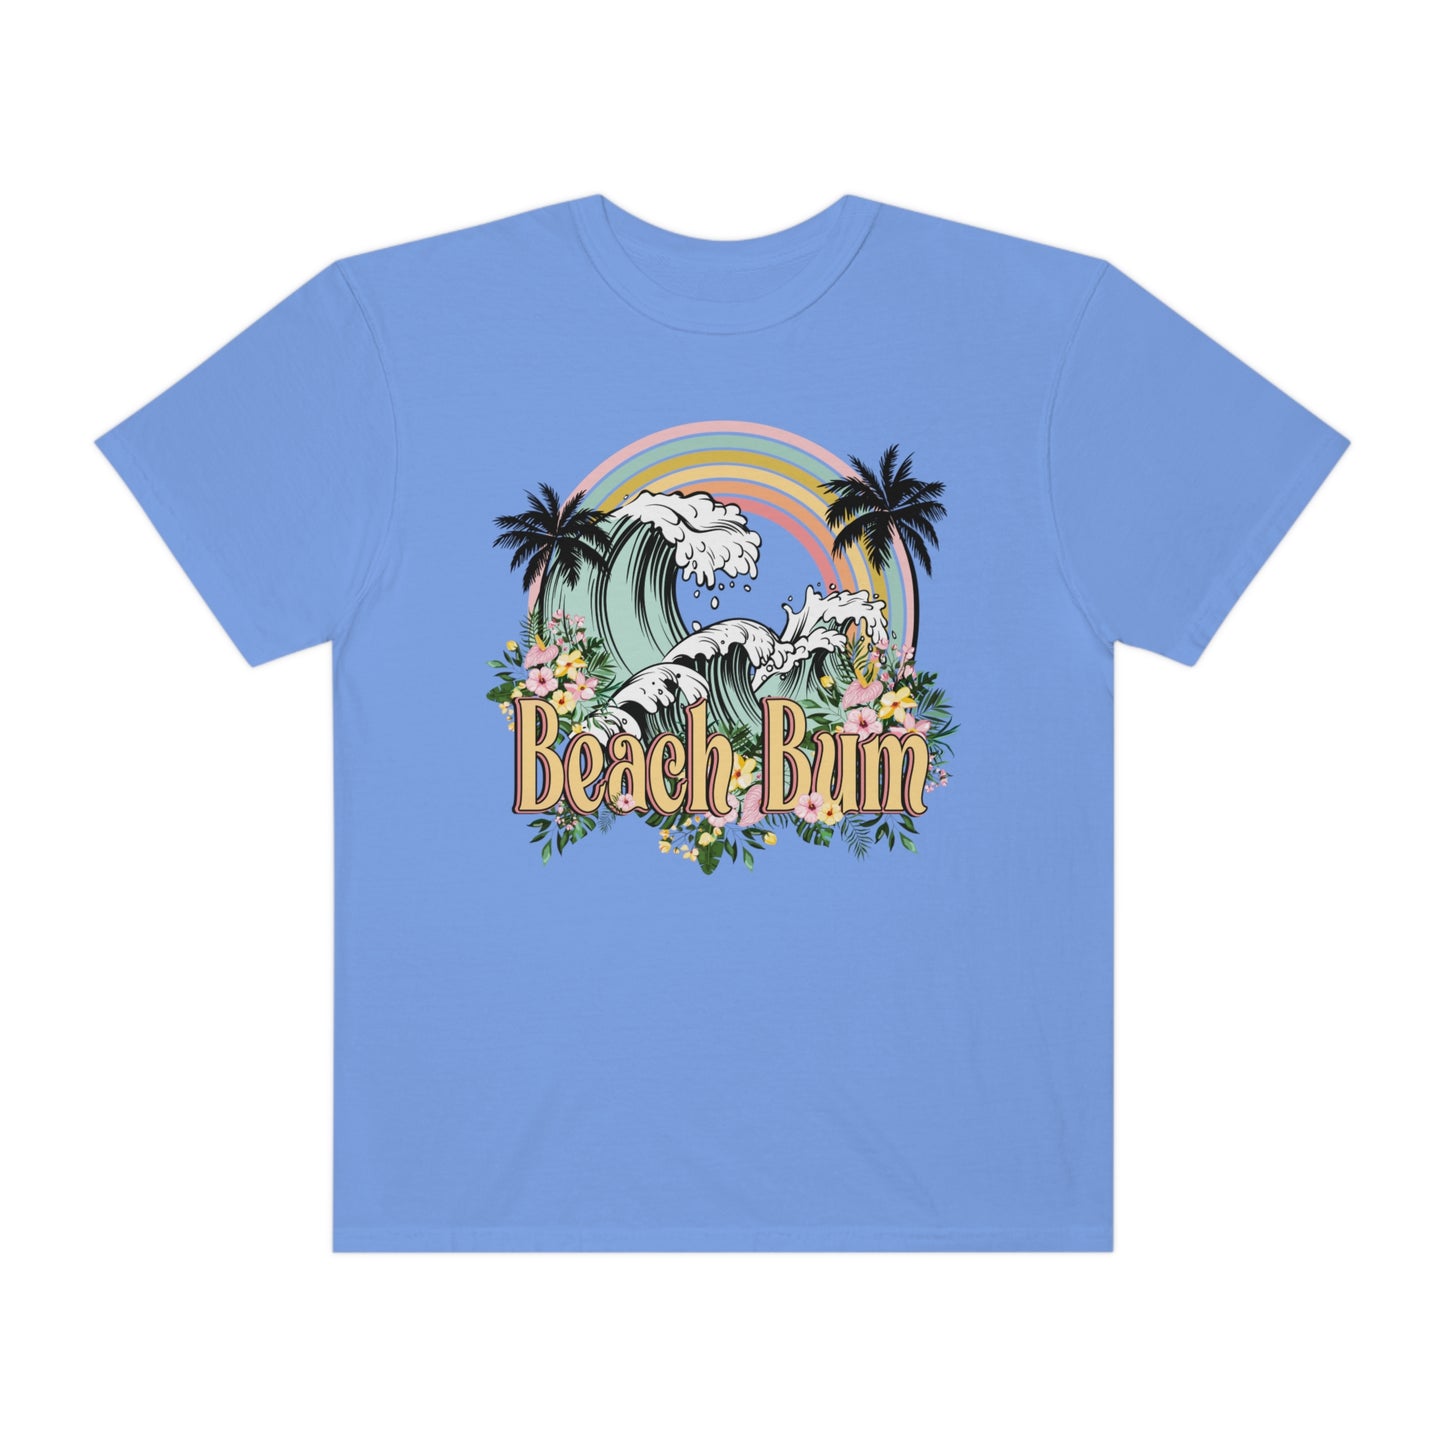 Beach Bum Shirt